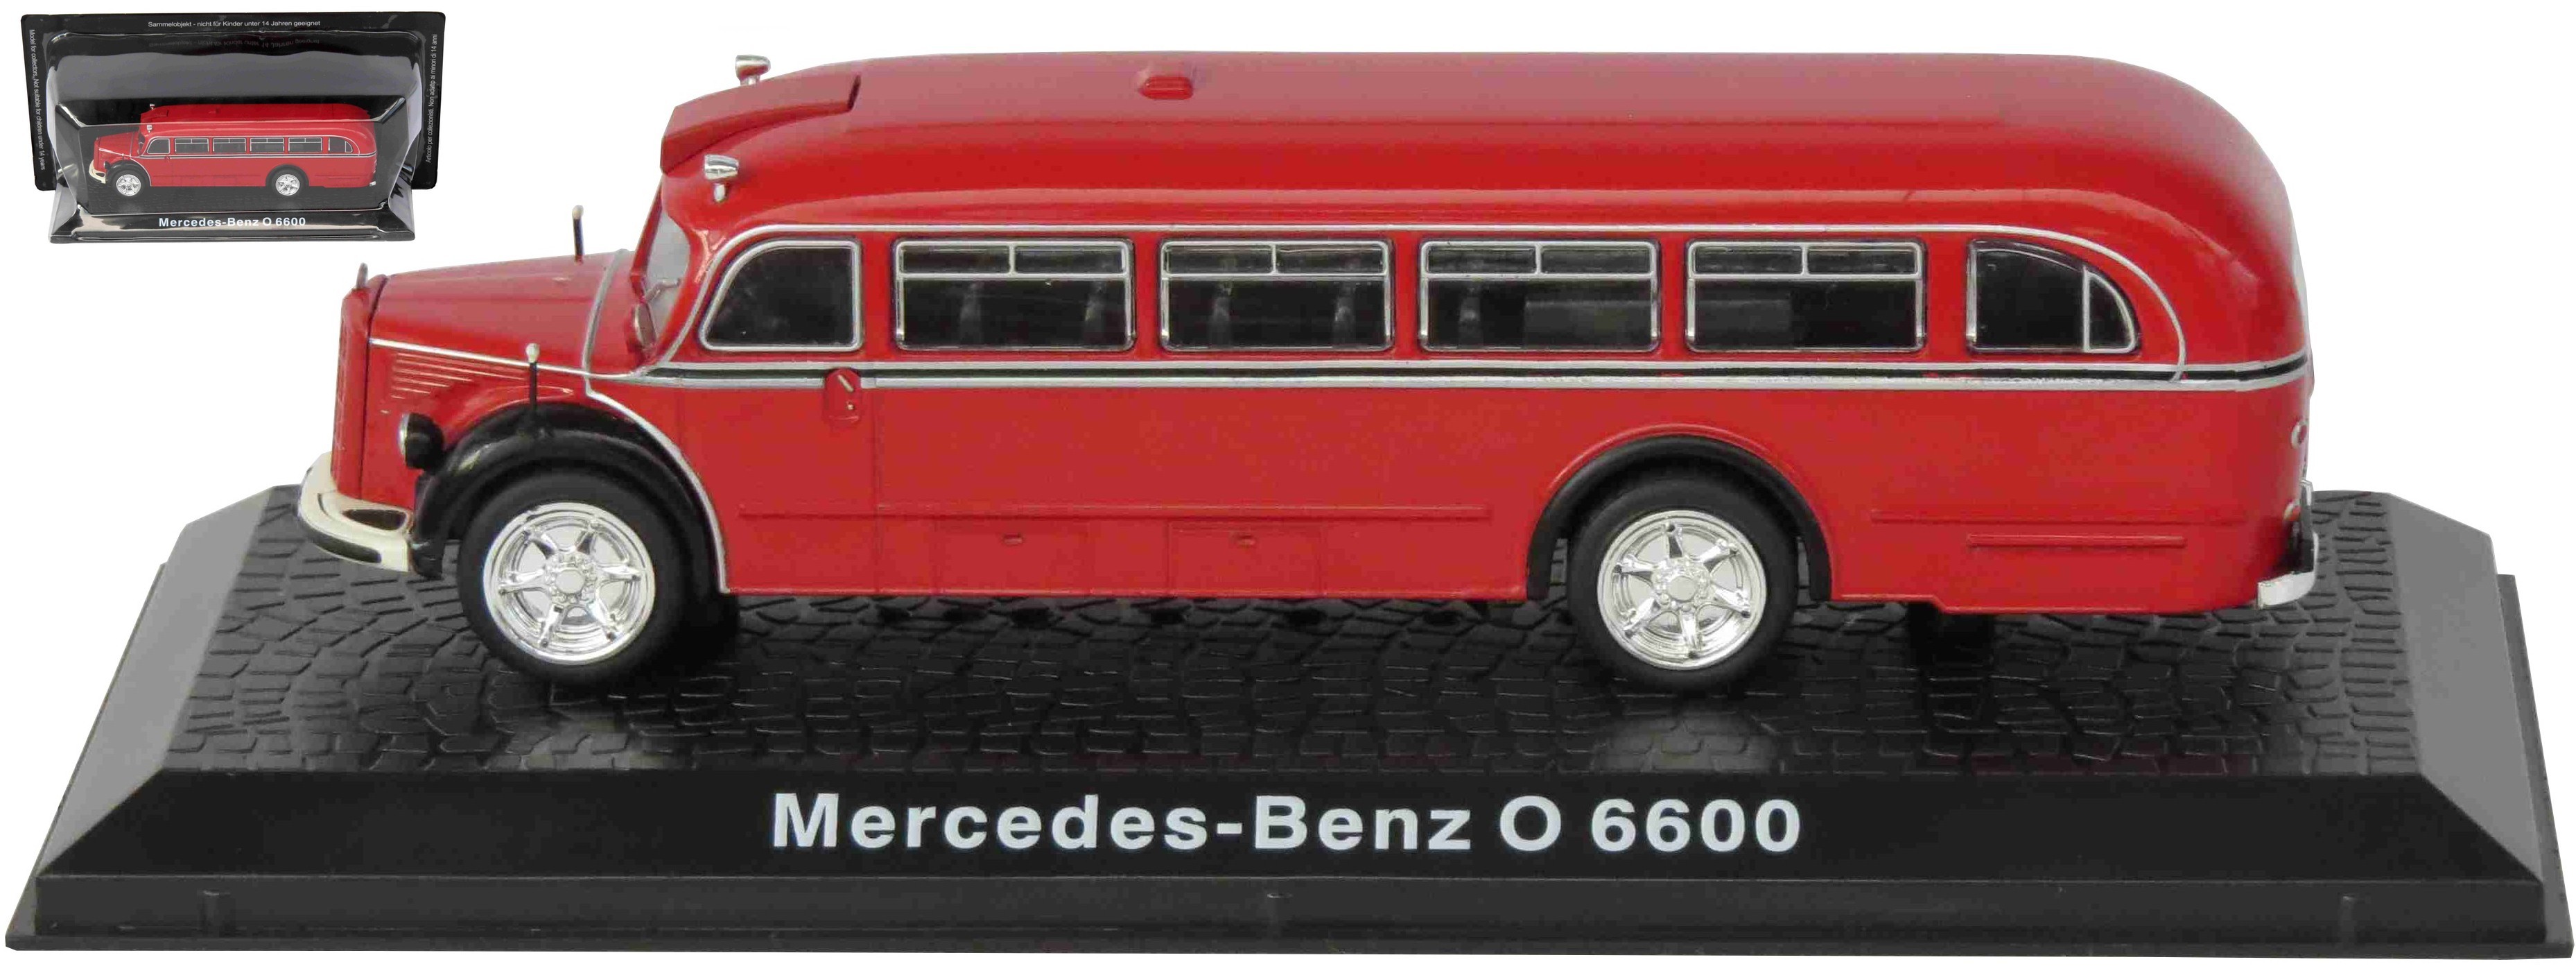 Mercedes Benz O 6600